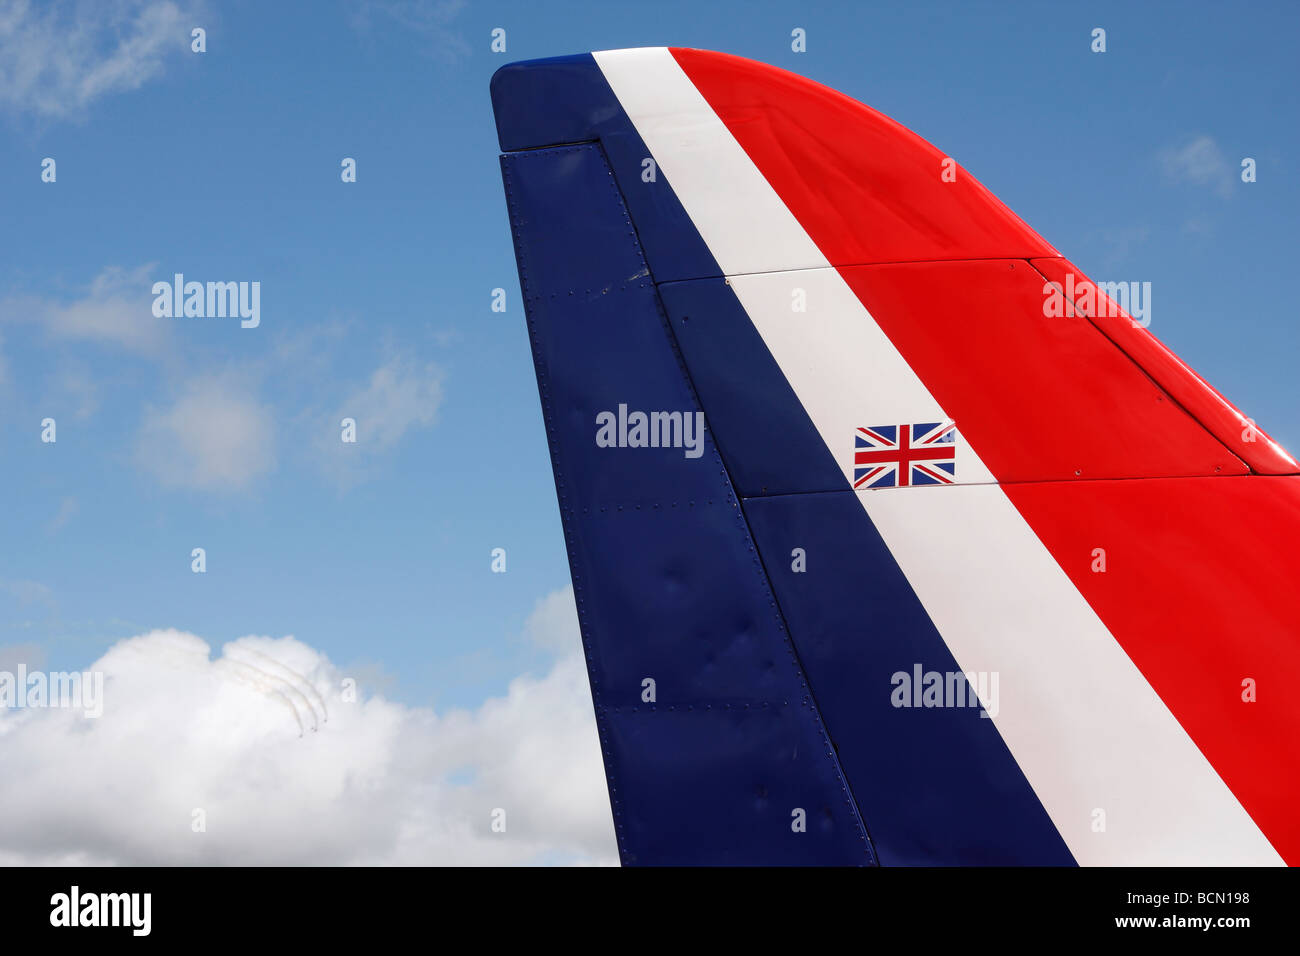 Rouge, Blanc et bleu] détail de la queue rouge 'flèches' avions Hawk, UK  Photo Stock - Alamy